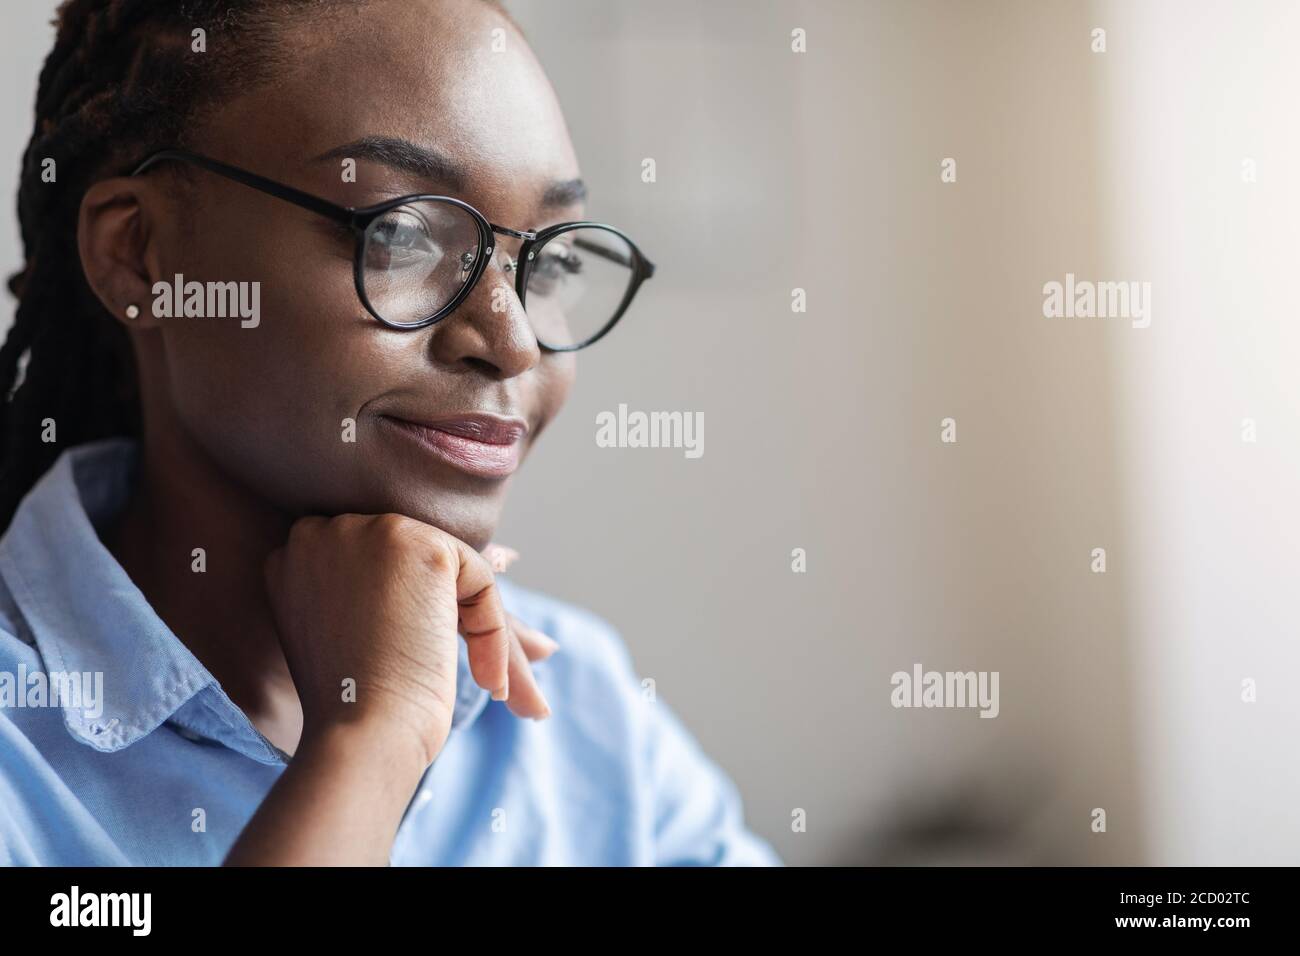 Primer retrato de una empresaria negra en apariencia de gafas aparte Foto de stock